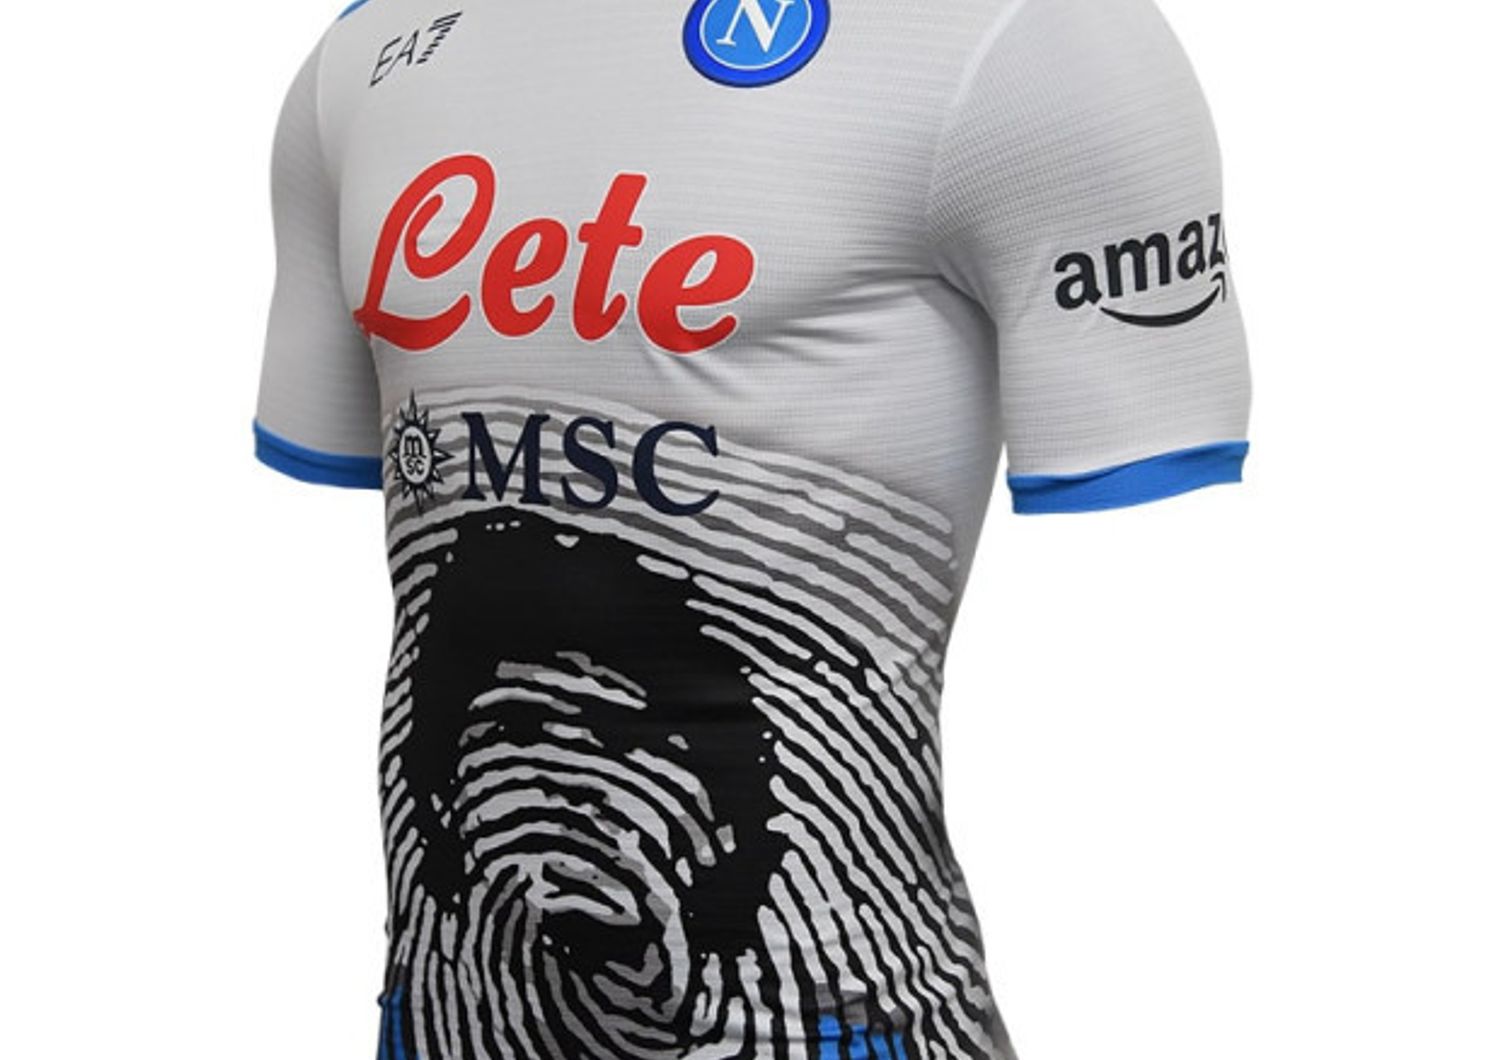 La versione da trasferta della maglia con cui il Napoli ha commemorato Diego Maradona in campo